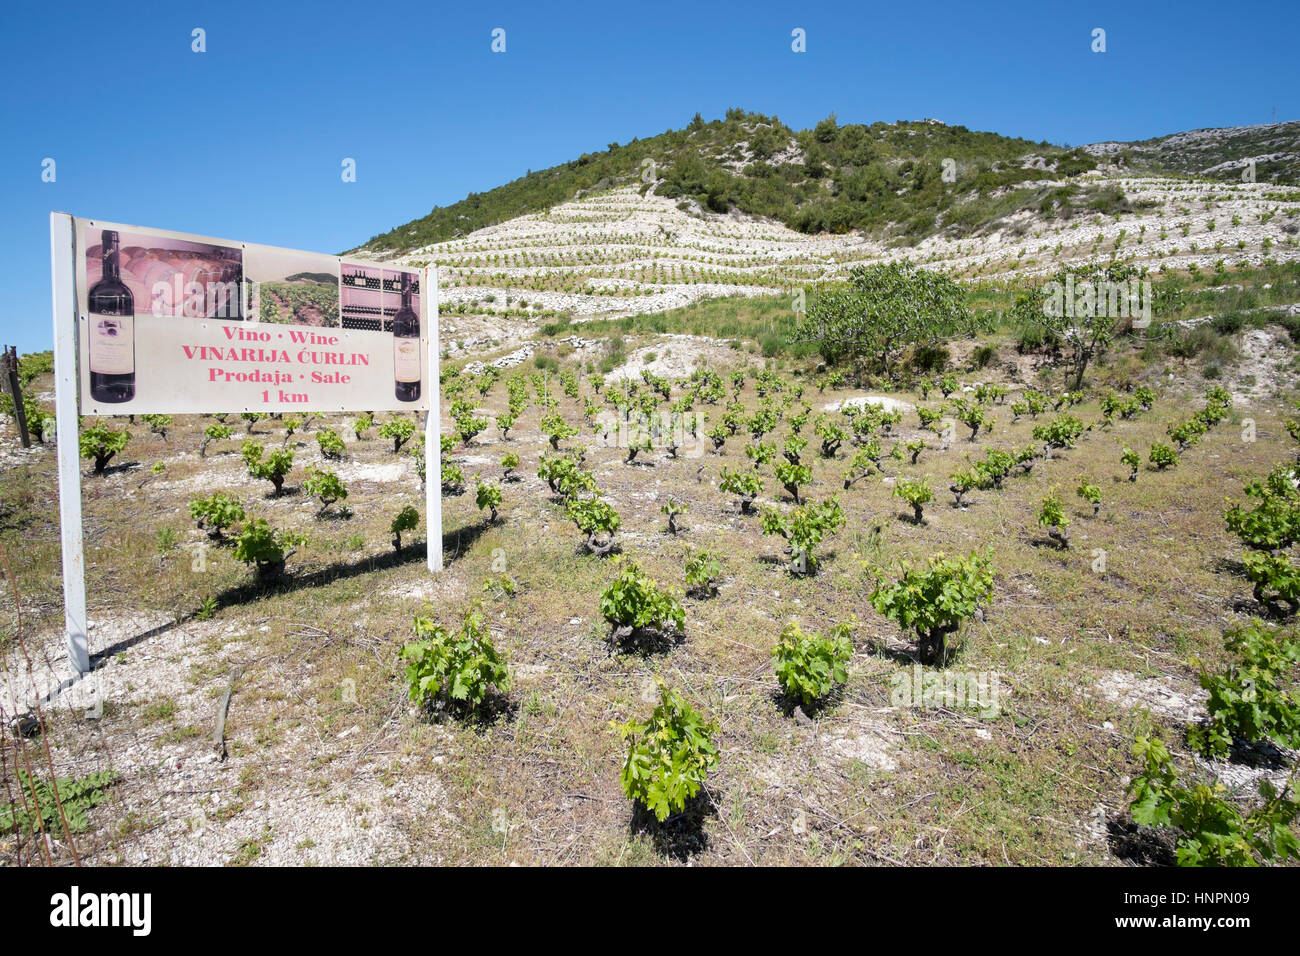 Curlin winery sign and vineyard, Plavac grape, Peljesac peninsula, Dalmatia, Croatia Stock Photo